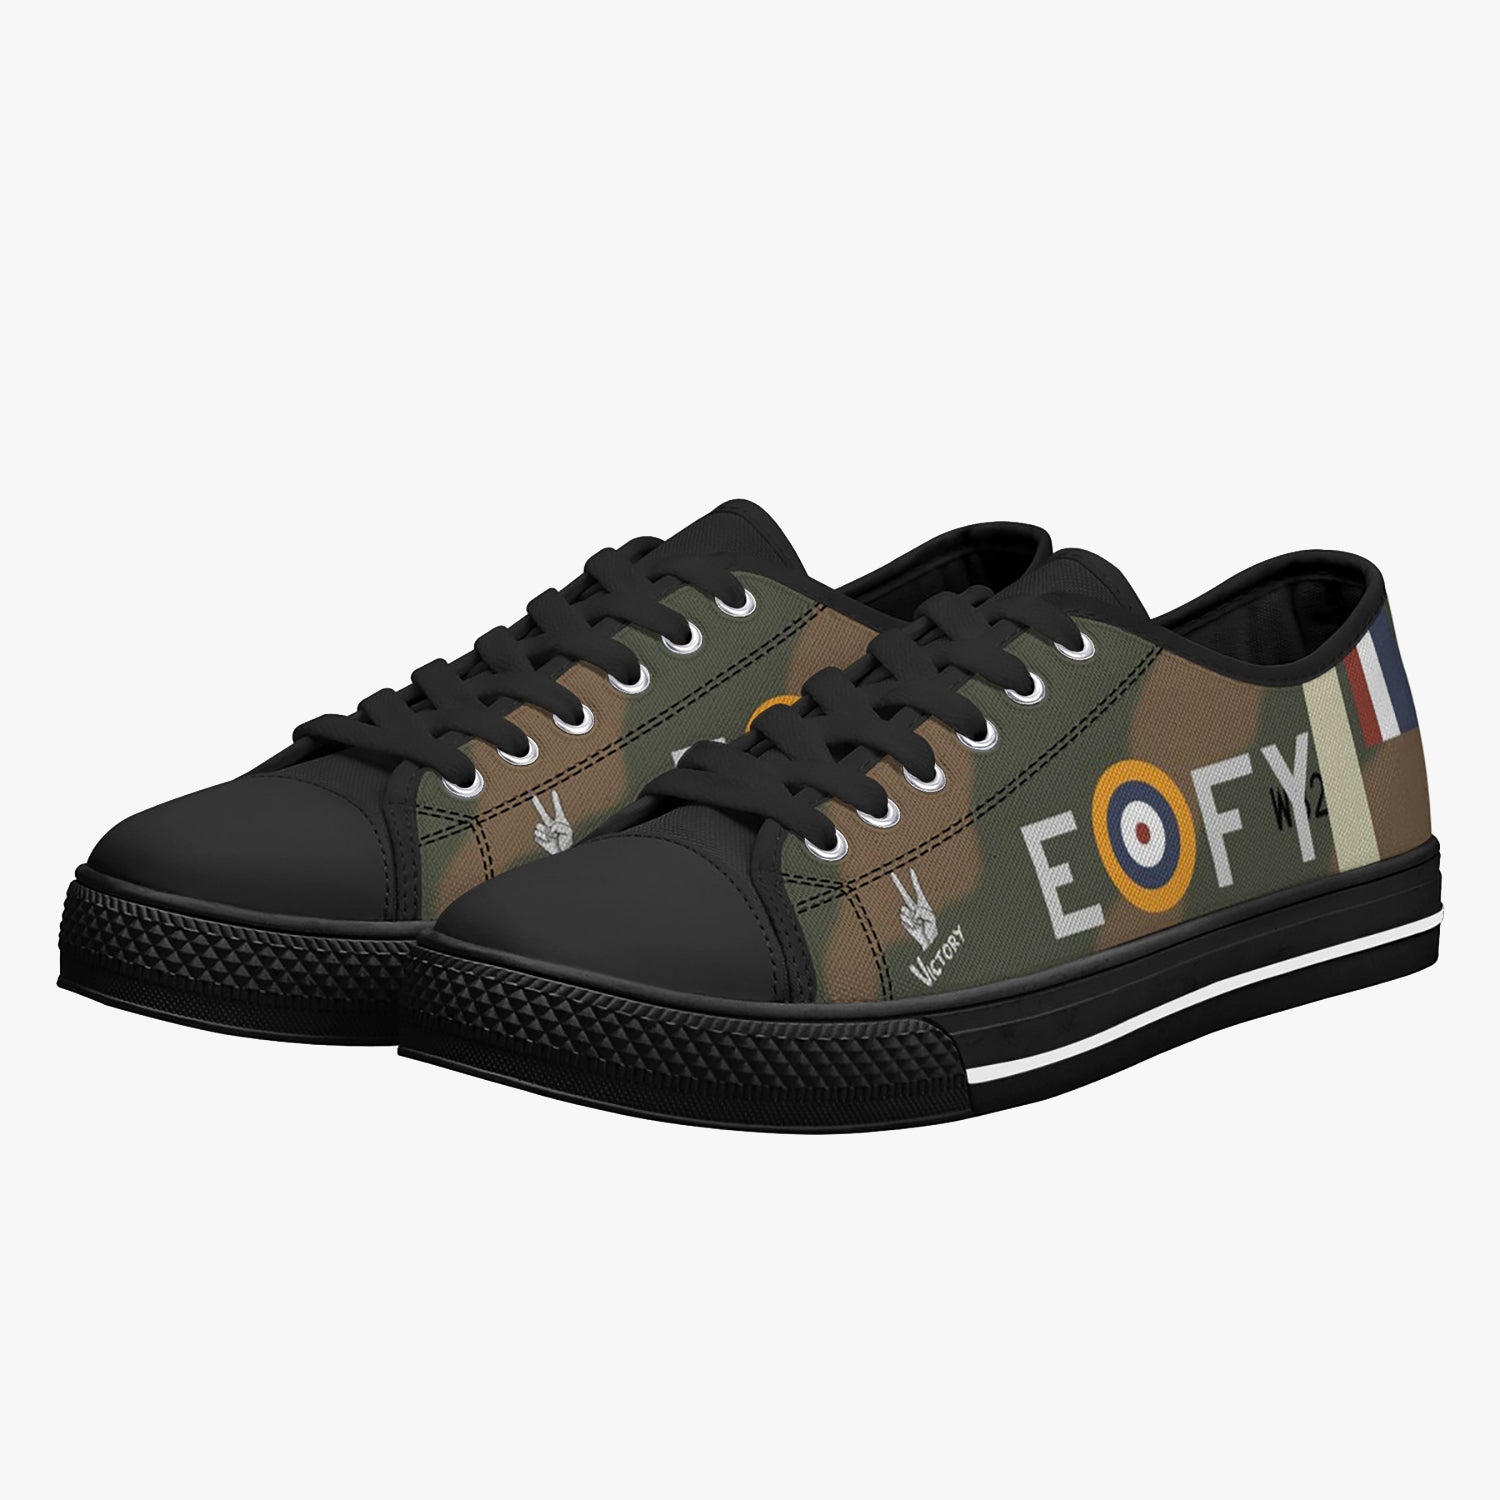 Spitfire "FY-E" Low Top Canvas Shoes